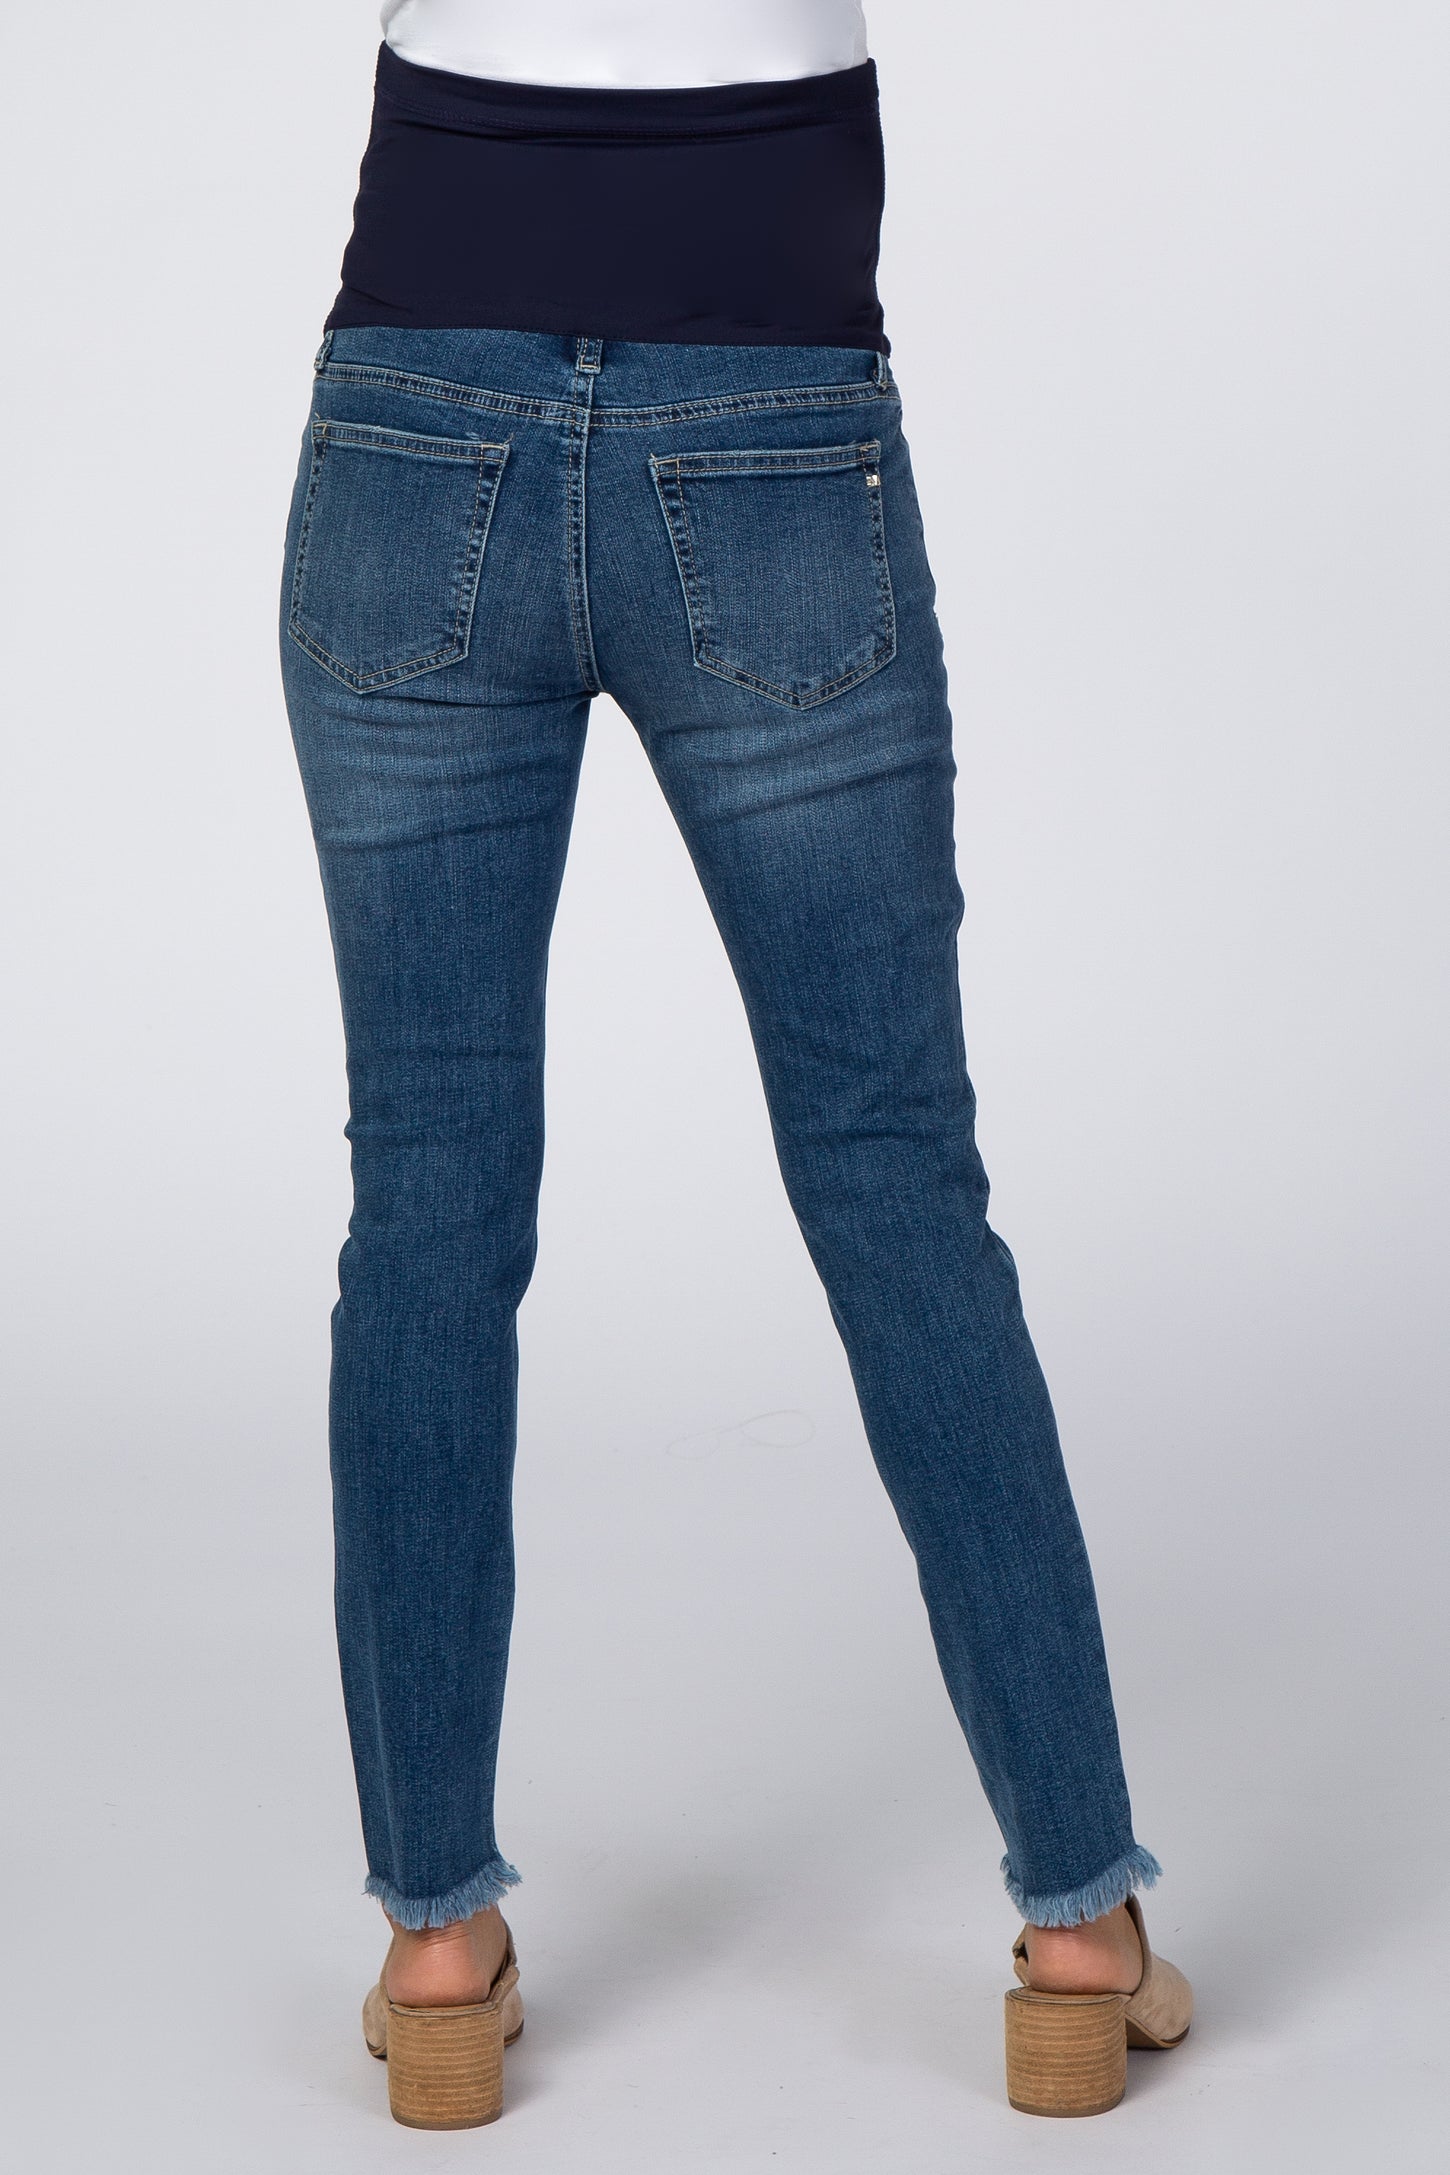 Blue Distressed Raw Hem Skinny Crop Maternity Jeans– PinkBlush